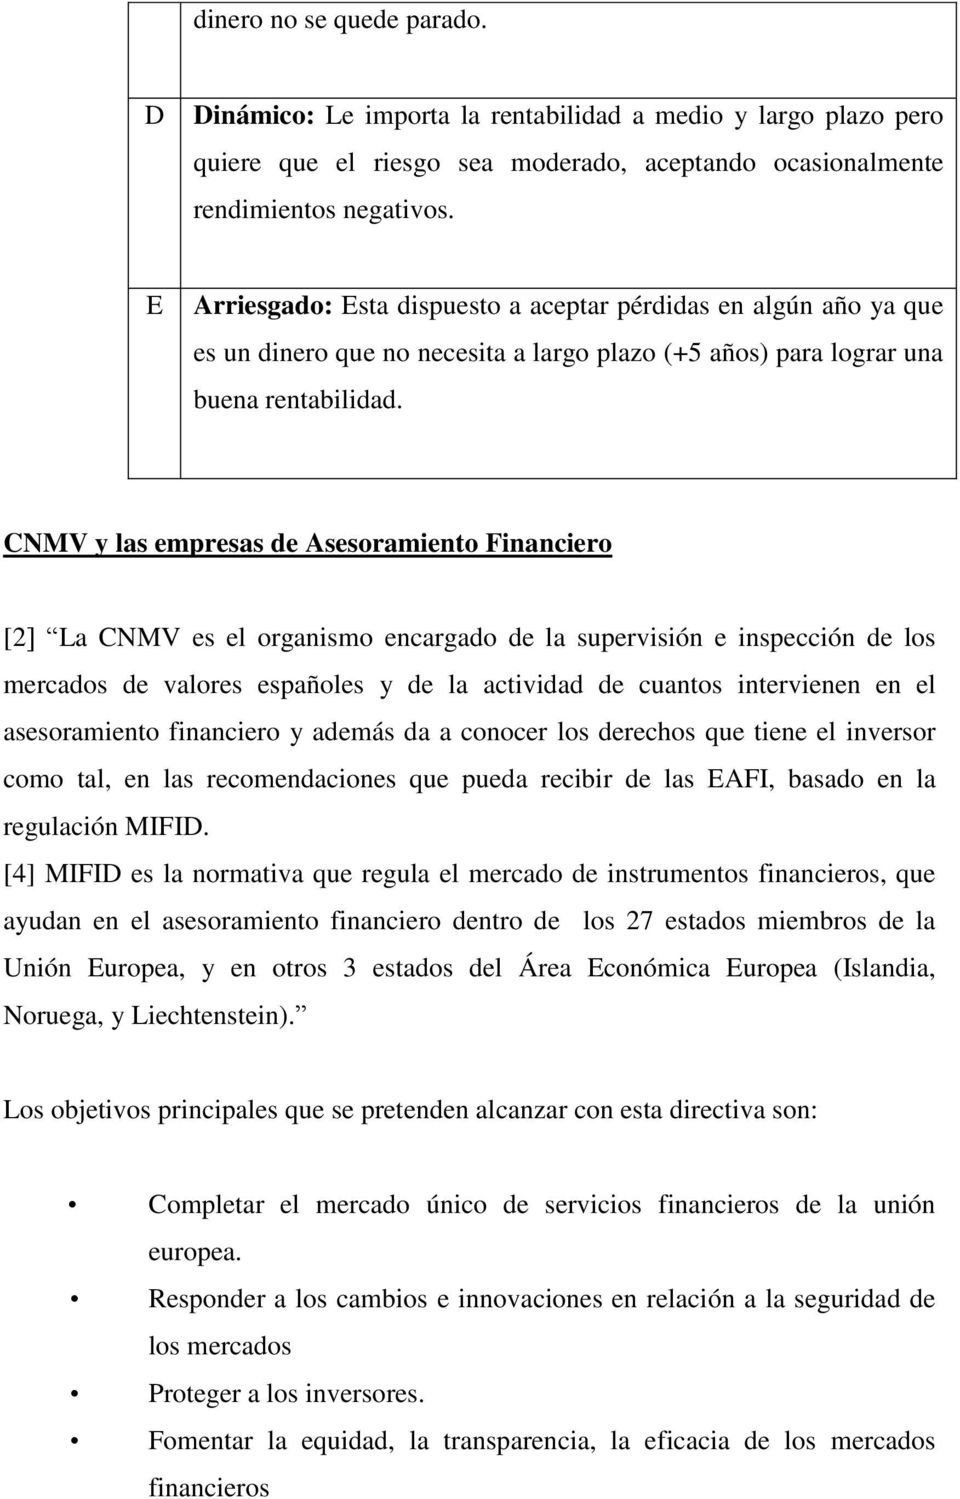 CNMV y las empresas de Asesoramiento Financiero [2] La CNMV es el organismo encargado de la supervisión e inspección de los mercados de valores españoles y de la actividad de cuantos intervienen en